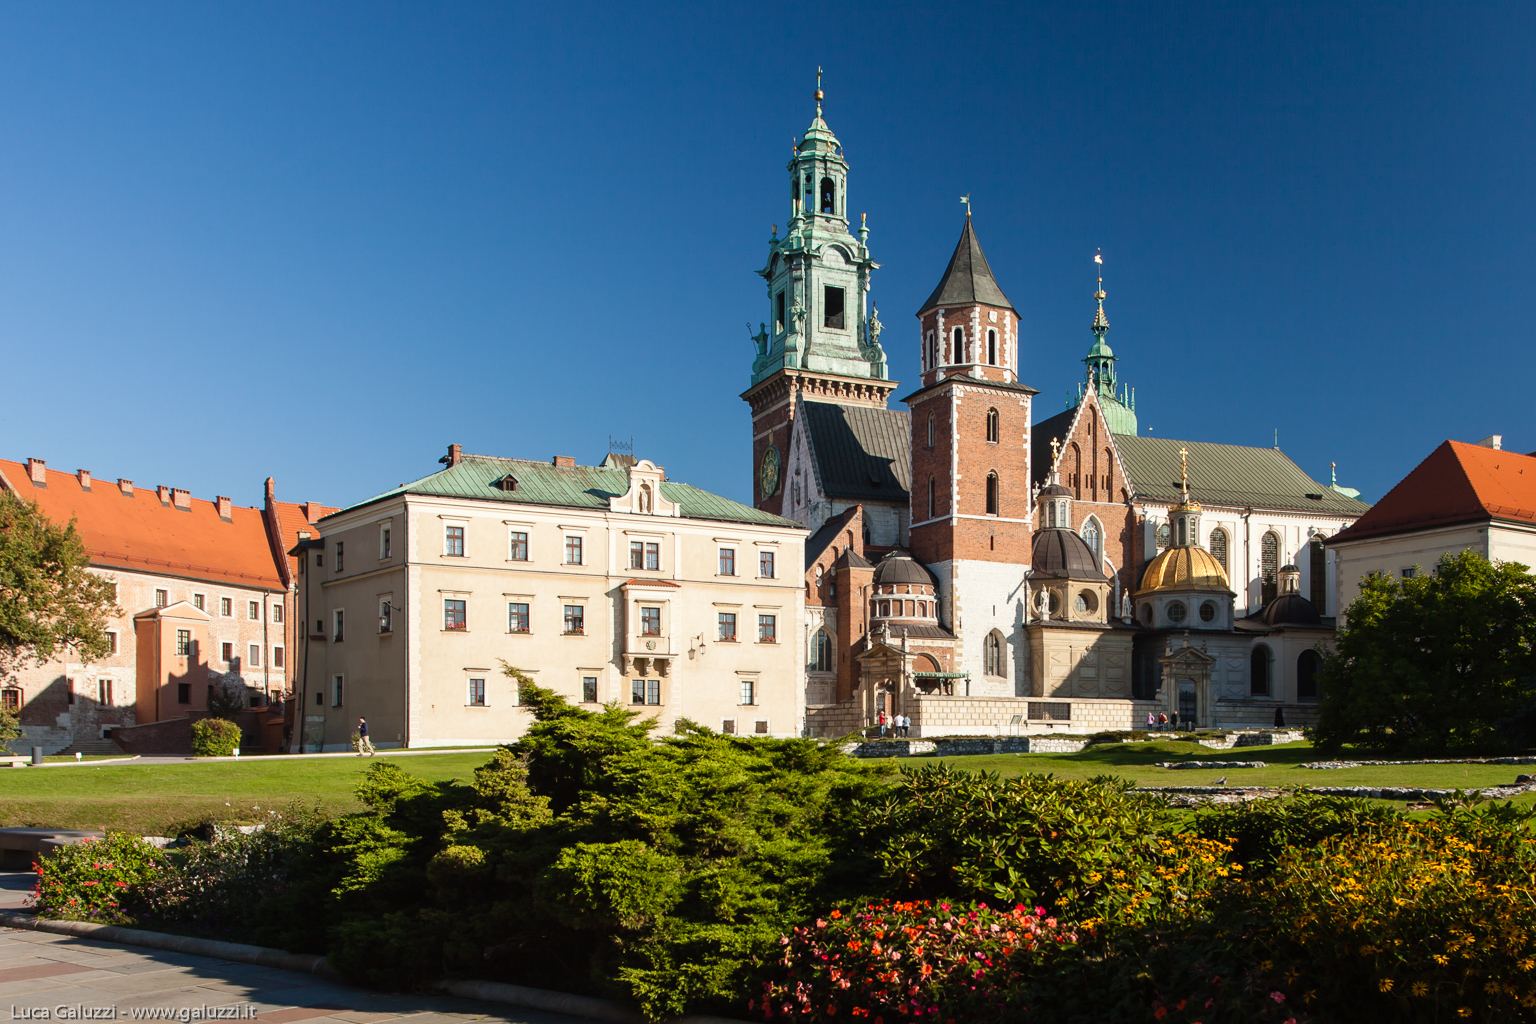 Cattedrale del Wawel